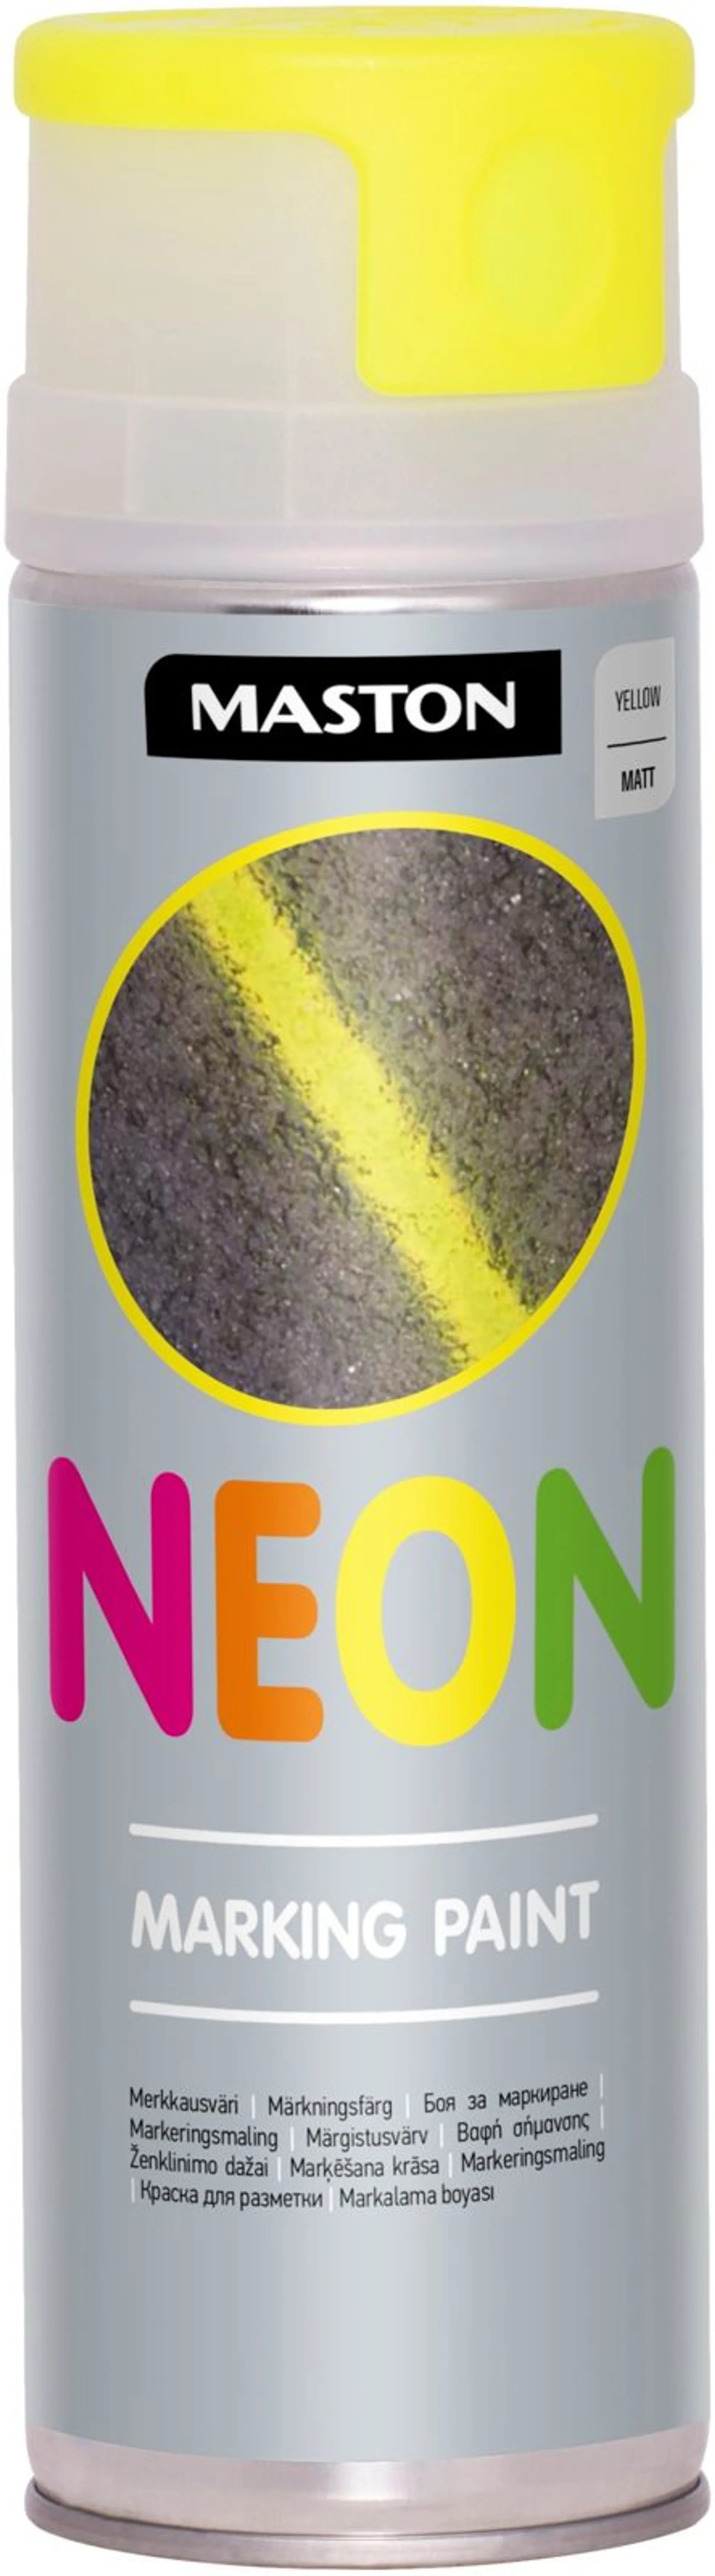 Maston Neon merkkausvärispray 500 ml keltainen